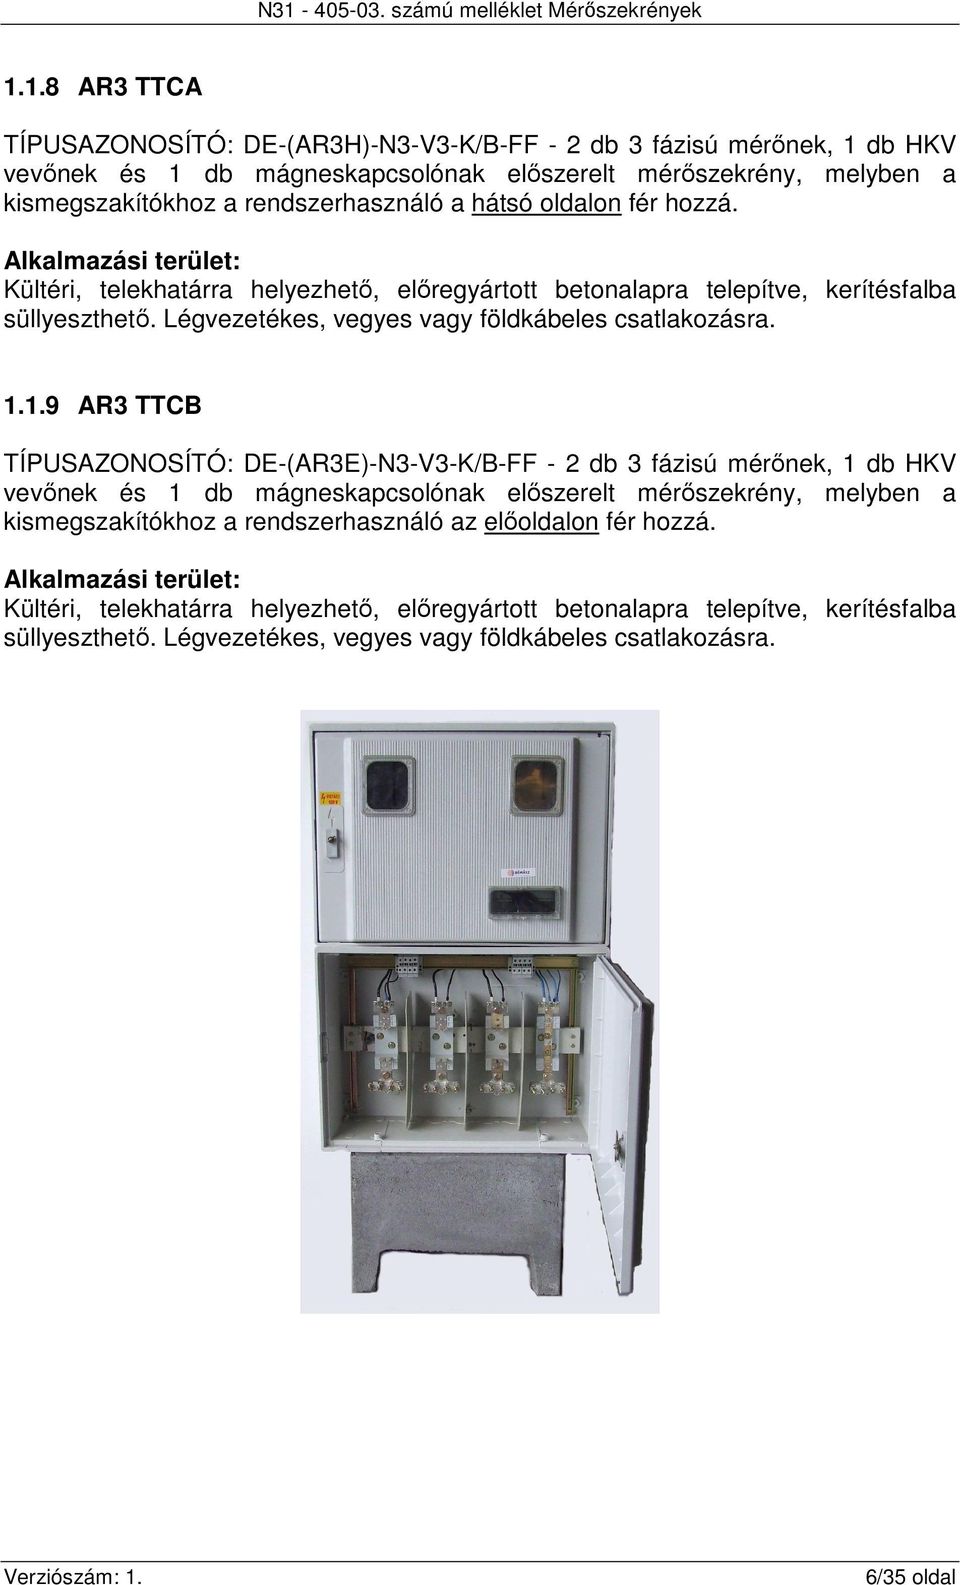 1.1.9 AR3 TTCB TÍPUSAZONOSÍTÓ: DE-(AR3E)-N3-V3-K/B-FF - 2 db 3 fázisú mérőnek, 1 db HKV vevőnek és 1 db mágneskapcsolónak előszerelt mérőszekrény, melyben a kismegszakítókhoz a rendszerhasználó az